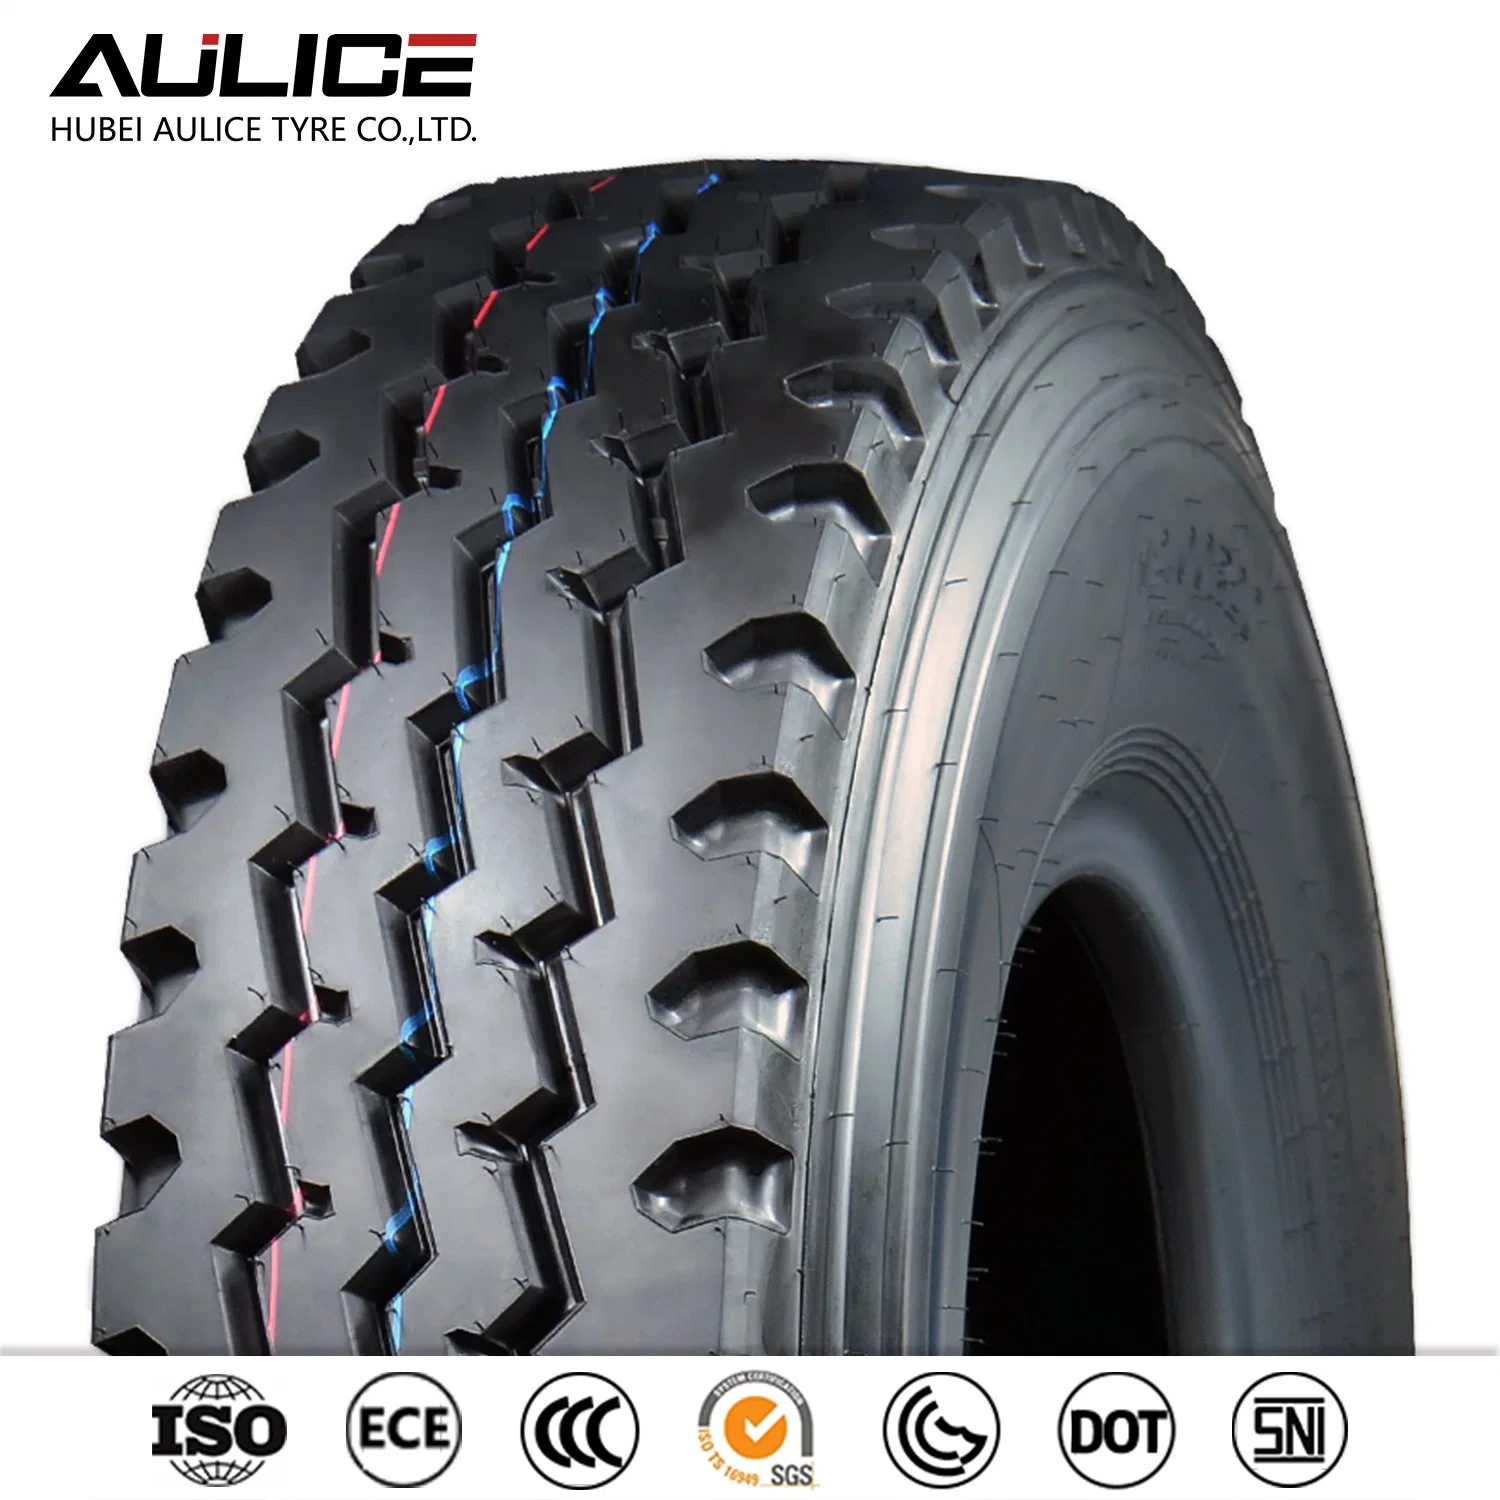 Aulice Brand Truck Tire 315/80r22.5 12.00r20 12r22.5 مع سعر تنافسي أوكازيون ساخن في كثير من البلاد ابحث عن وكيل الآن من الصّين مصنع الإطارات